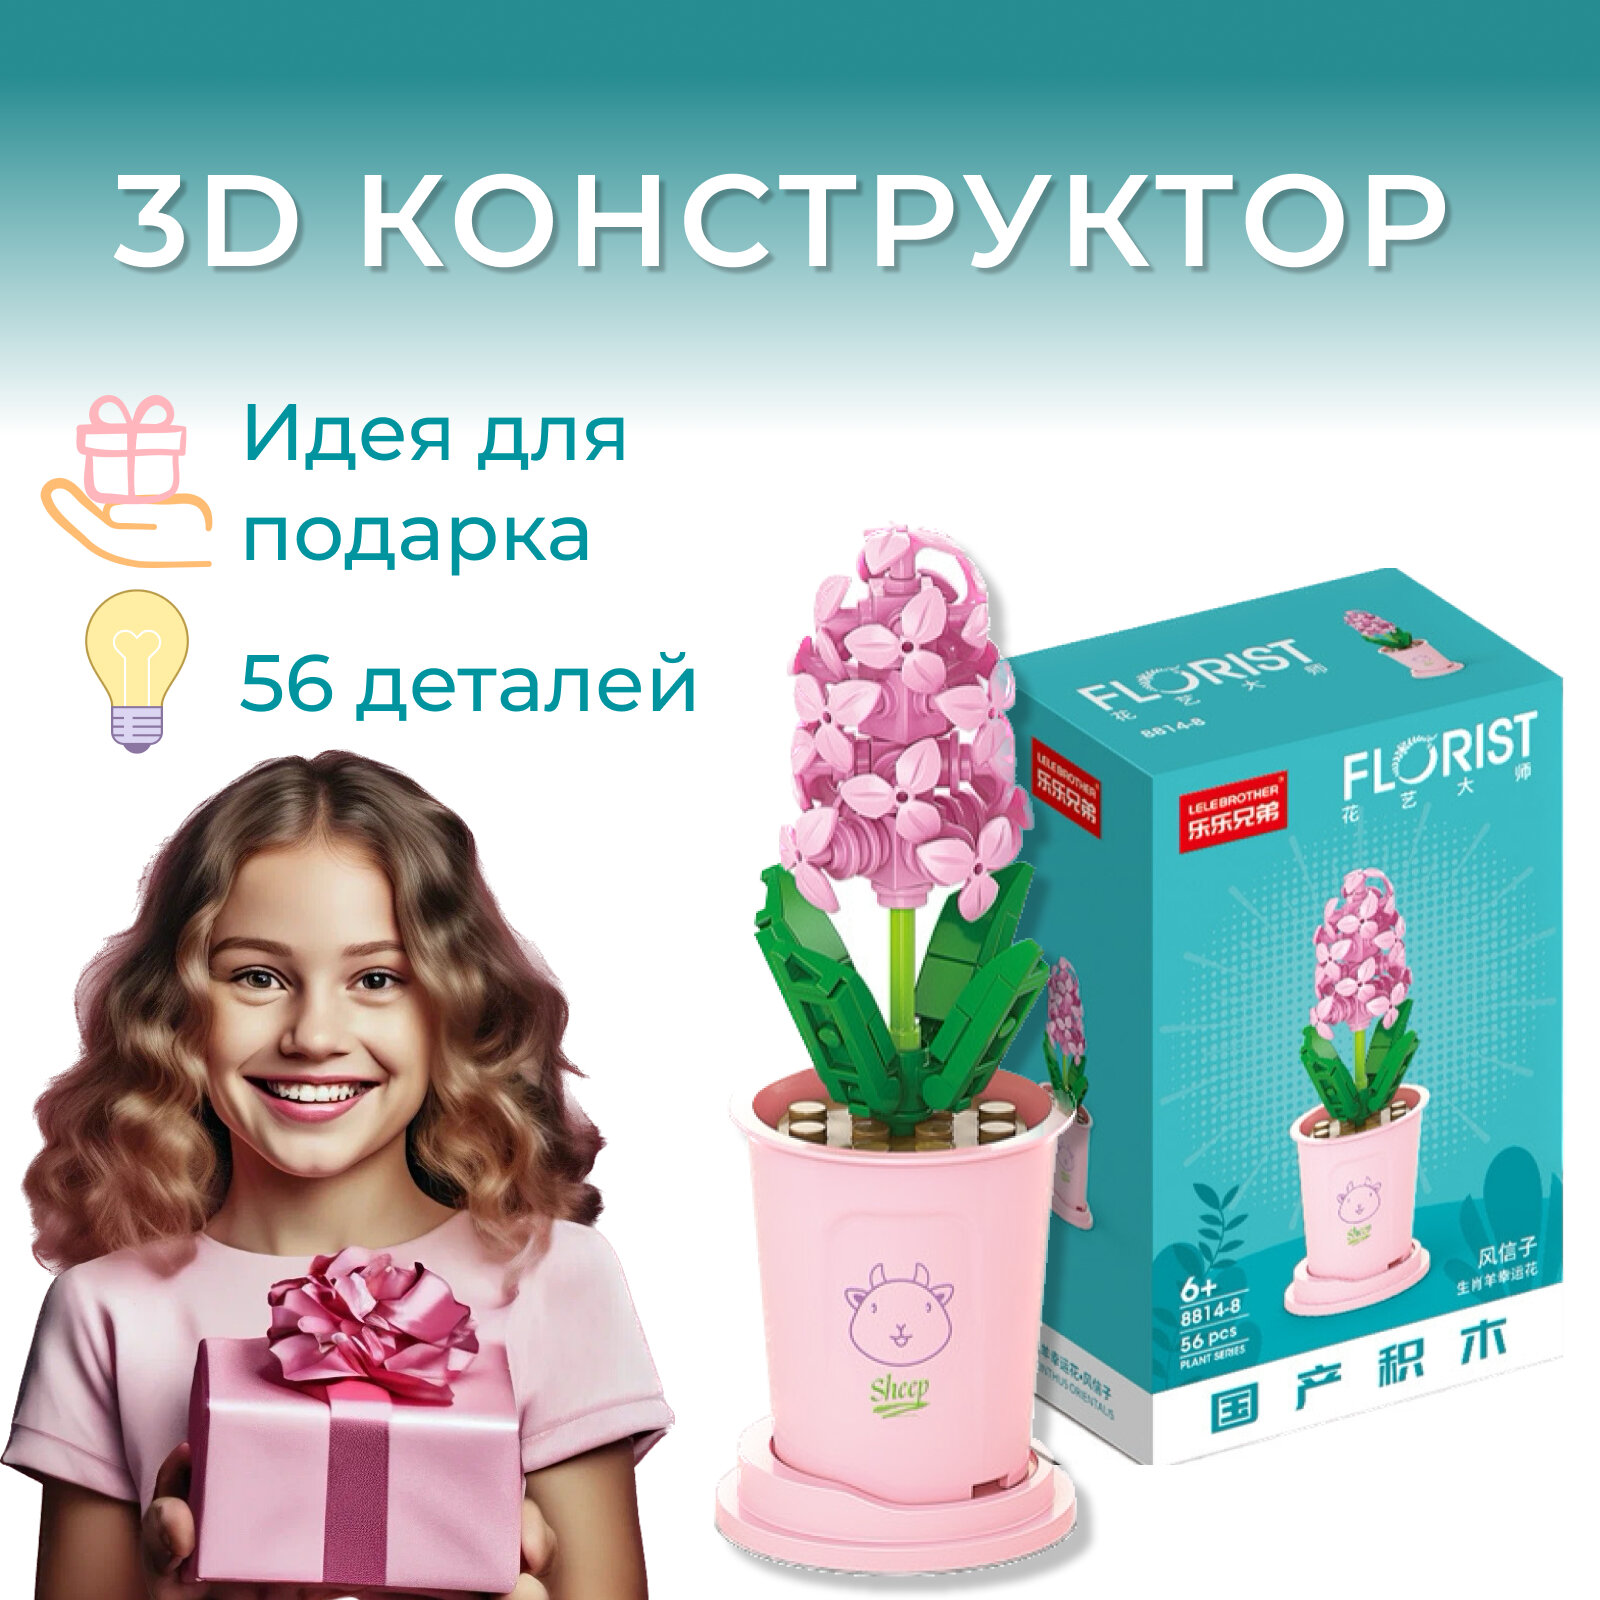 Детский конструктор пластиковый коллекционный "Цветок в горшке" 56 деталей флорист